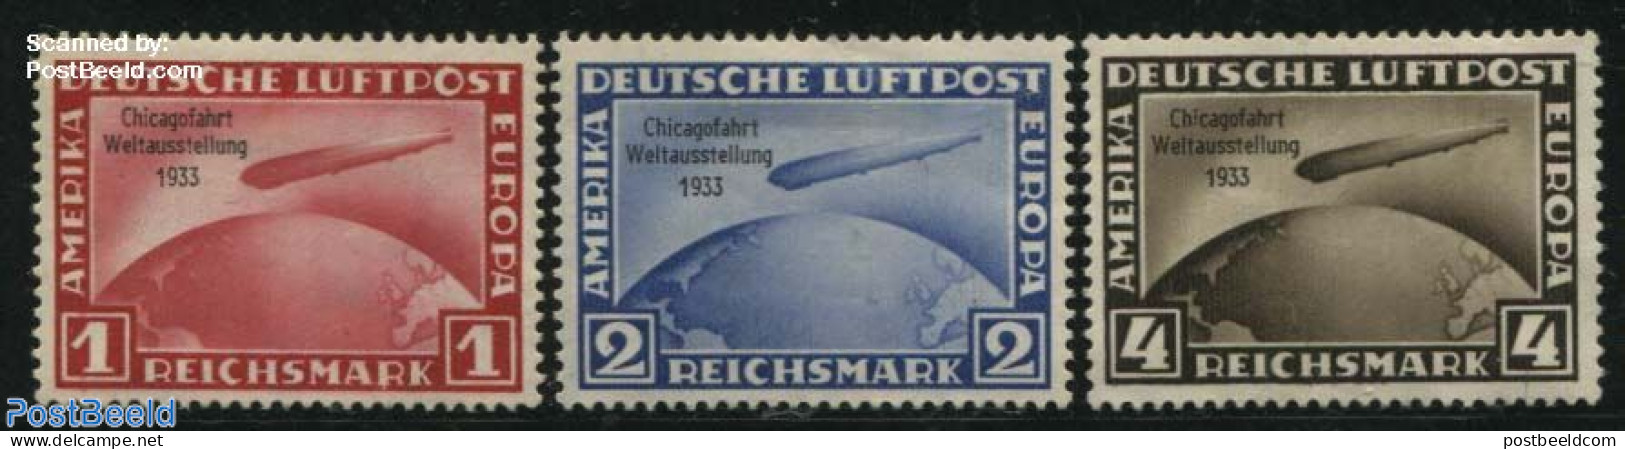 Germany, Empire 1933 Chicagofahrt Weltausstellung 3v, Mint NH, Transport - Zeppelins - Nuevos